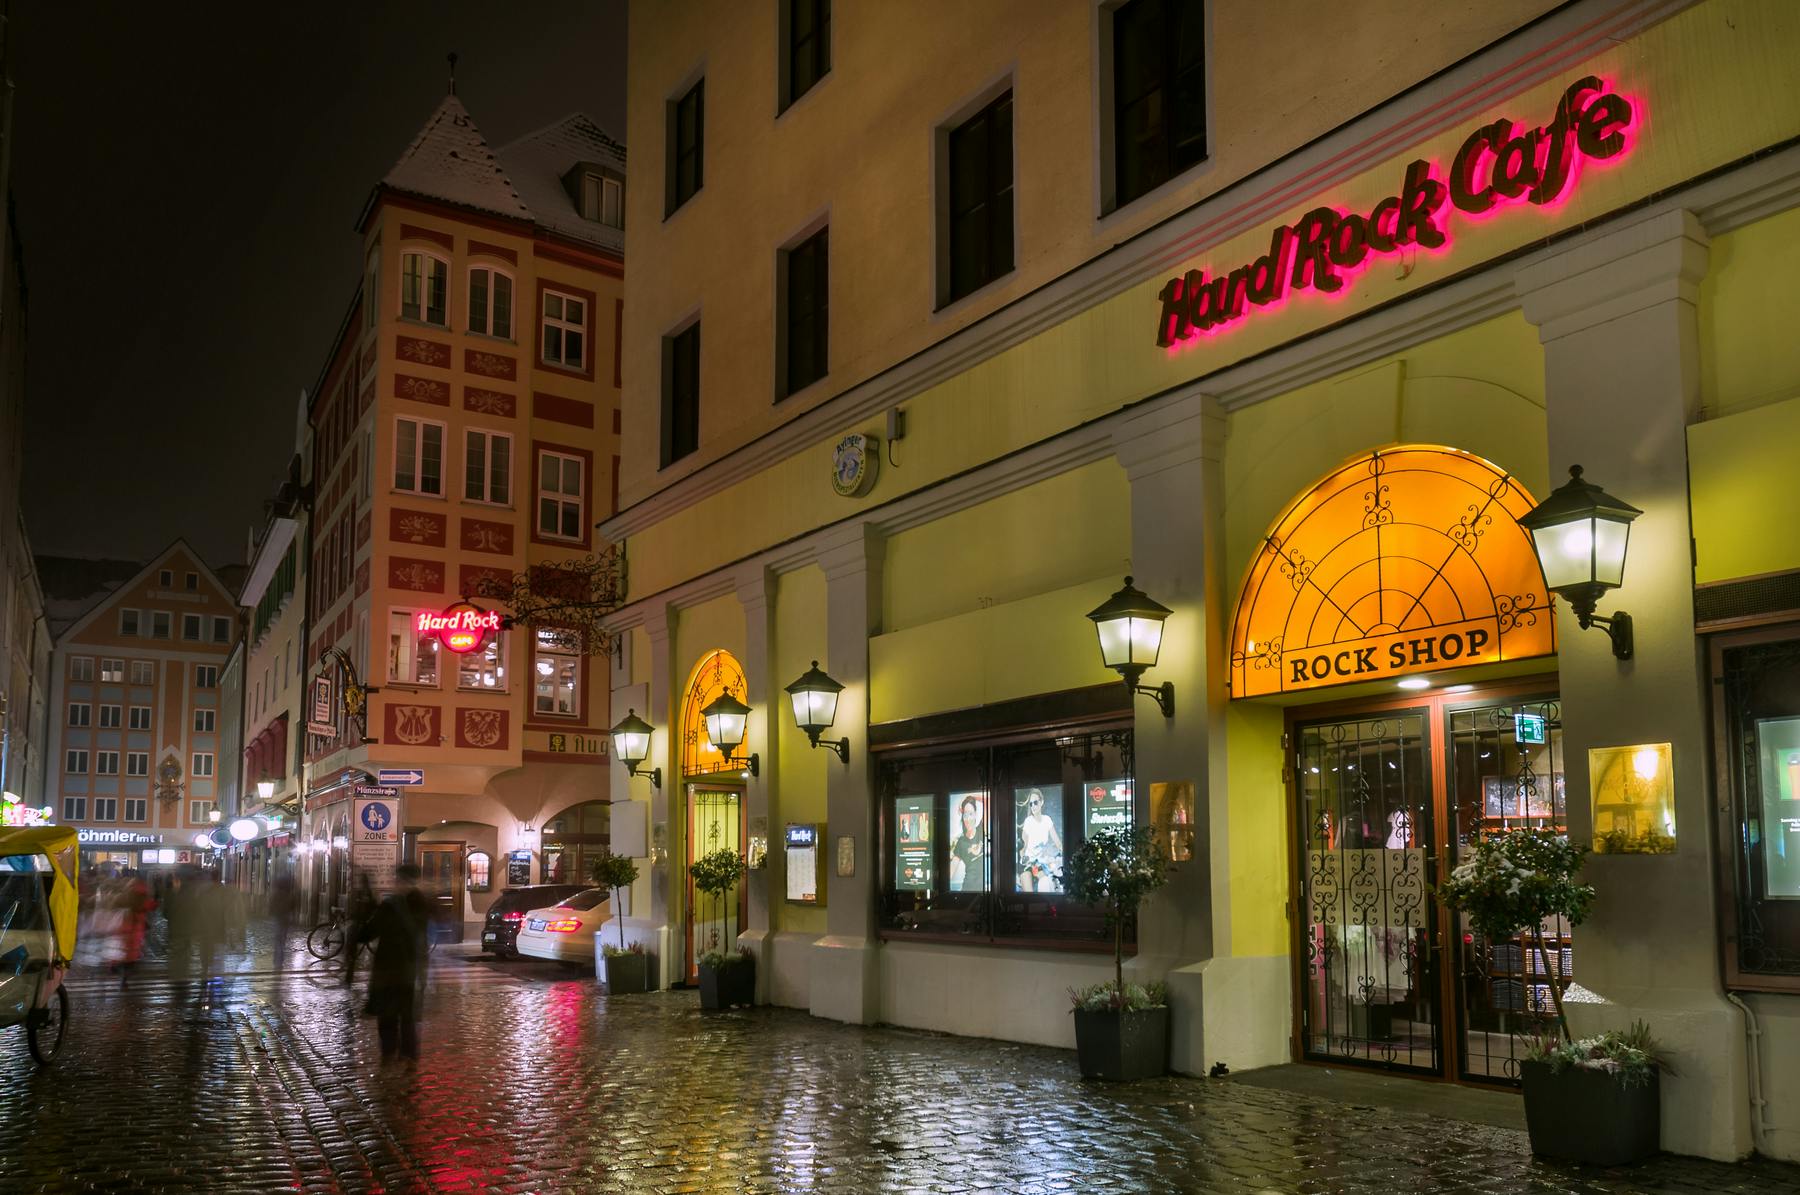 Hard Rock Cafe Munique: assentos prioritários com menu